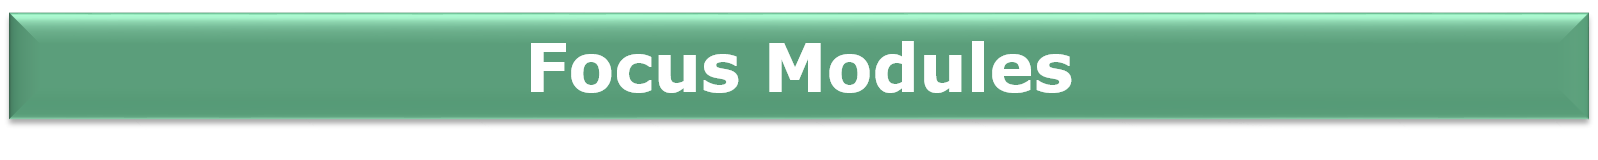 Focus Modules